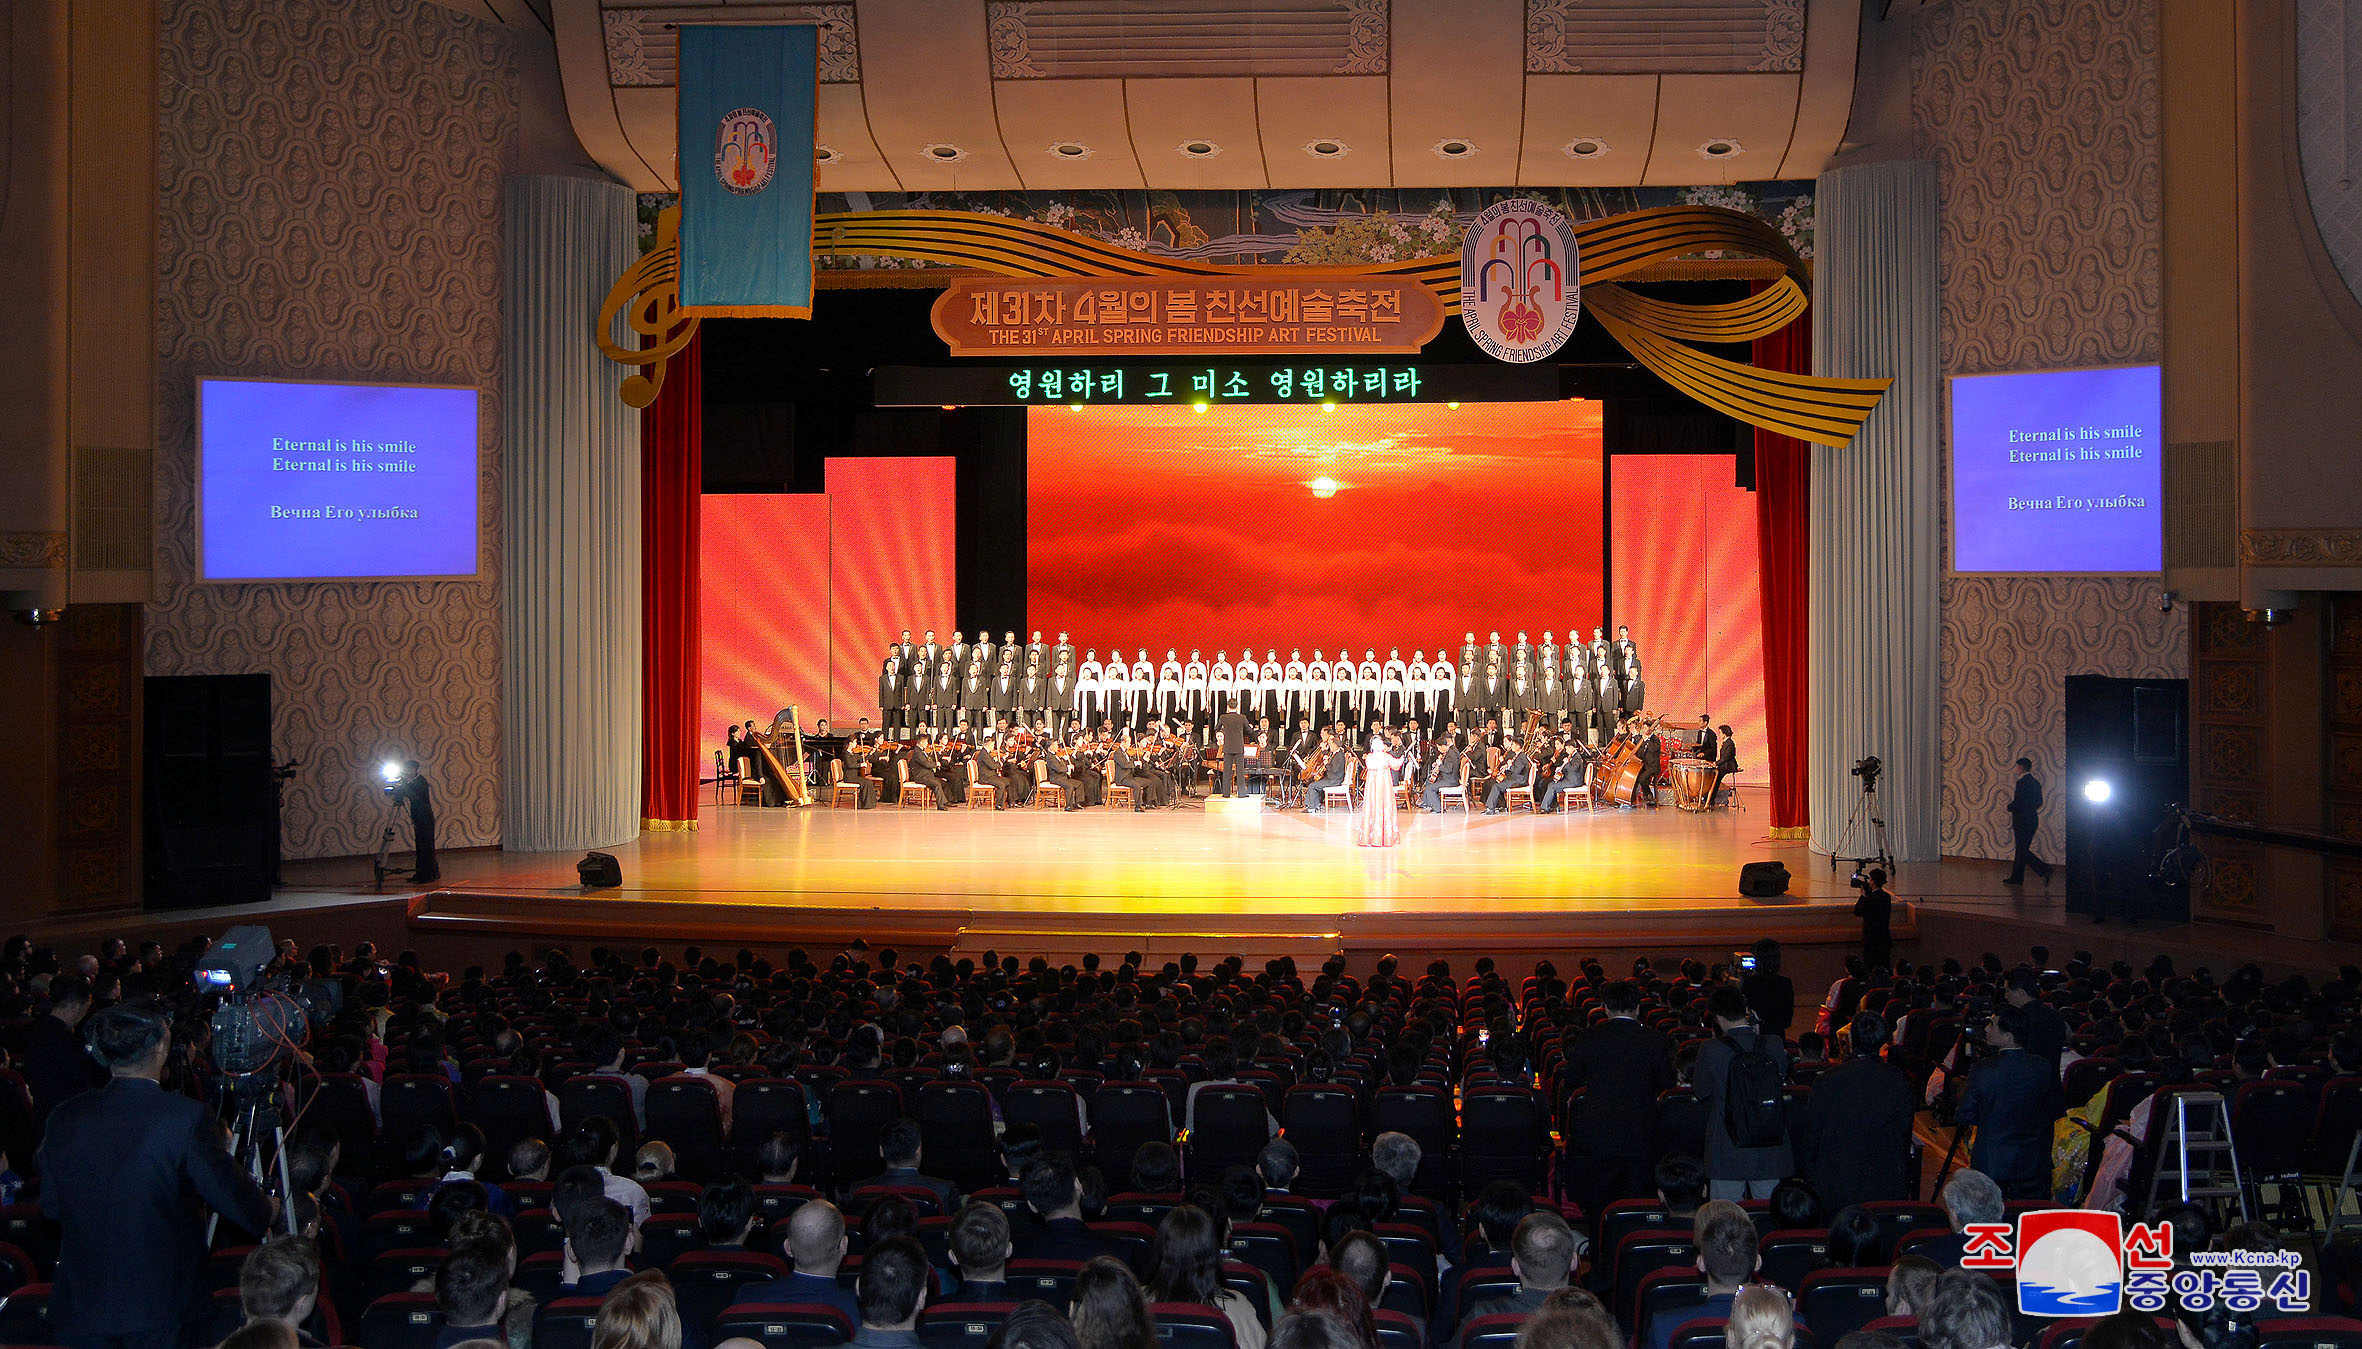 عروض مسرحية احتفالات بذكرى ميلاد مؤسس كوريا الشمالية